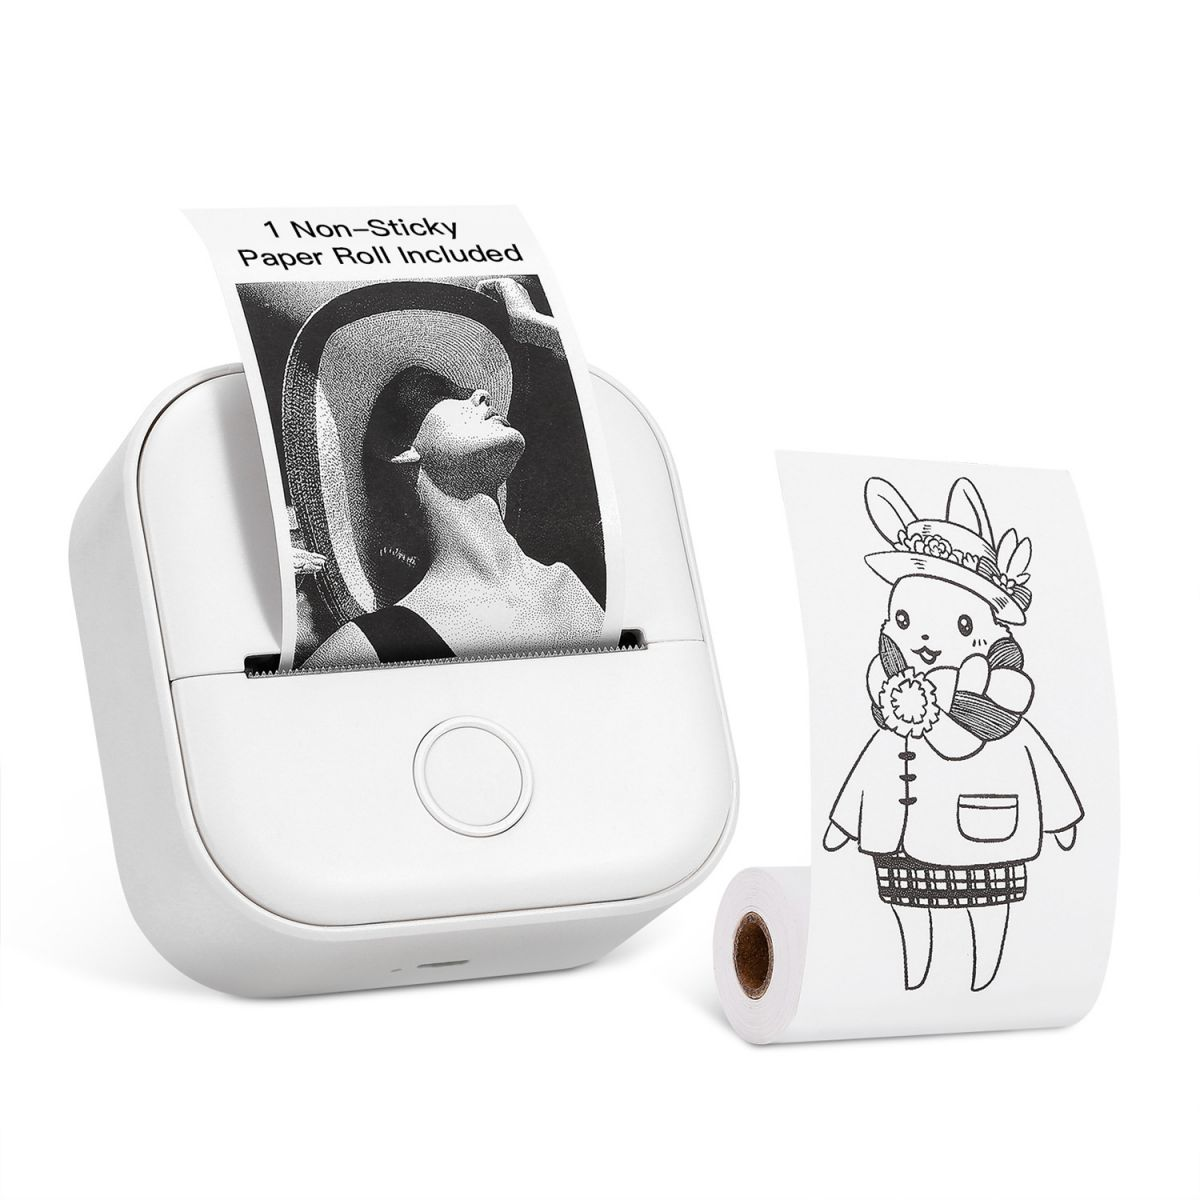 KINSI Tragbar Etikettendrucker,Mini TaschenaufkleberDrucker,Bluetooth Schwarz-Weiß-Druck Drucker Wireless